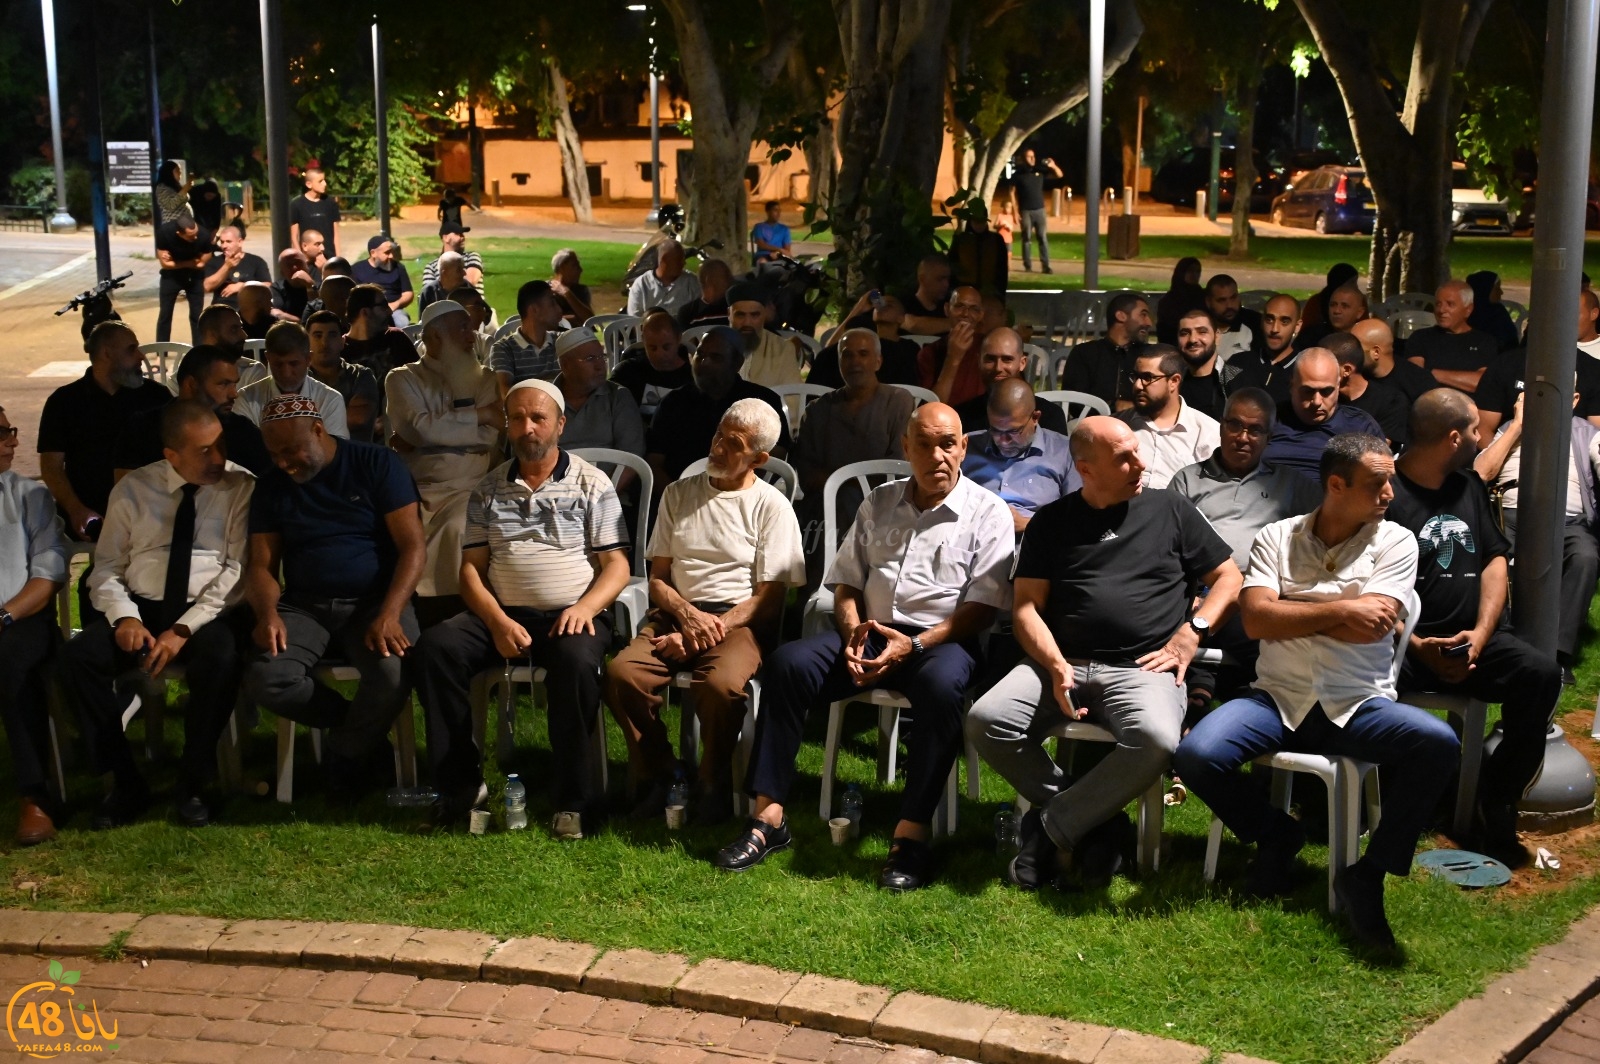  الاحتفال بالتوقيع على ميثاق السلم الأهلي في مدينة يافا 